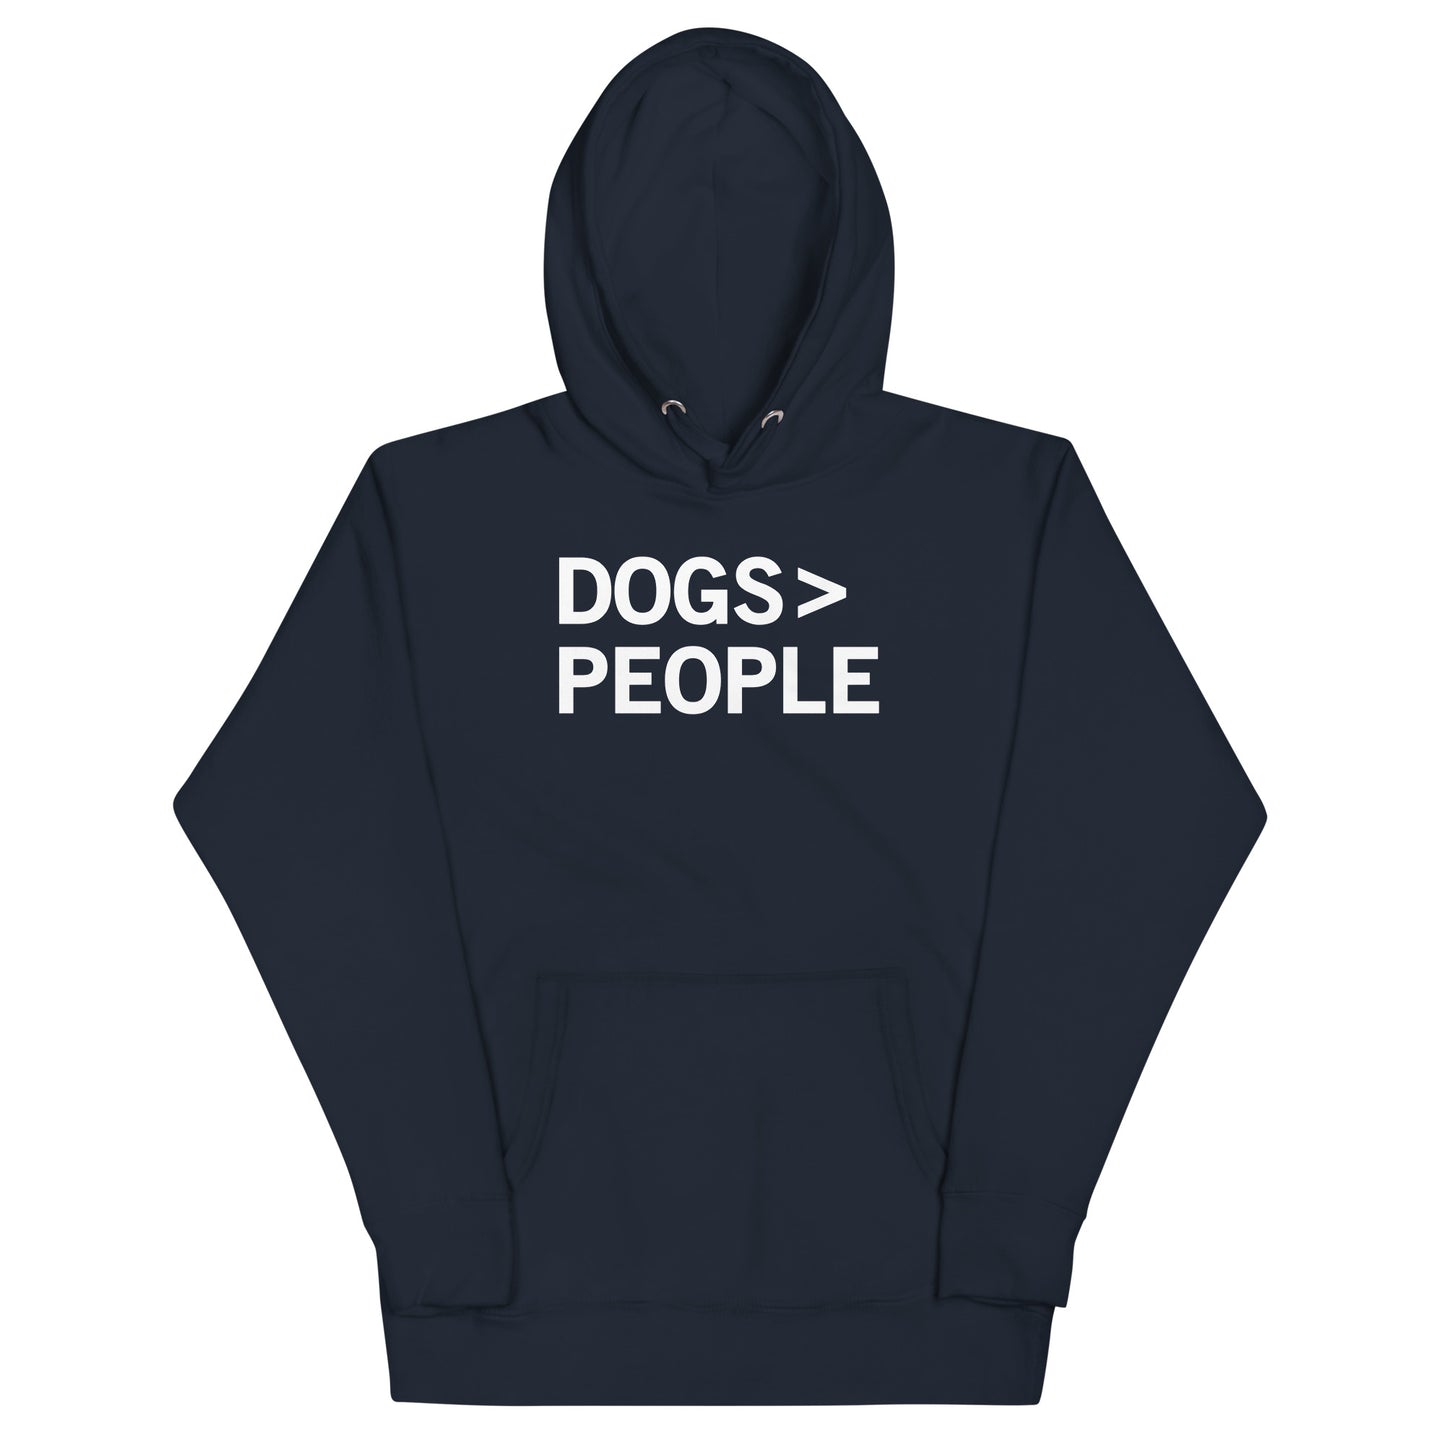 Dogs>People Unisex Hoodie